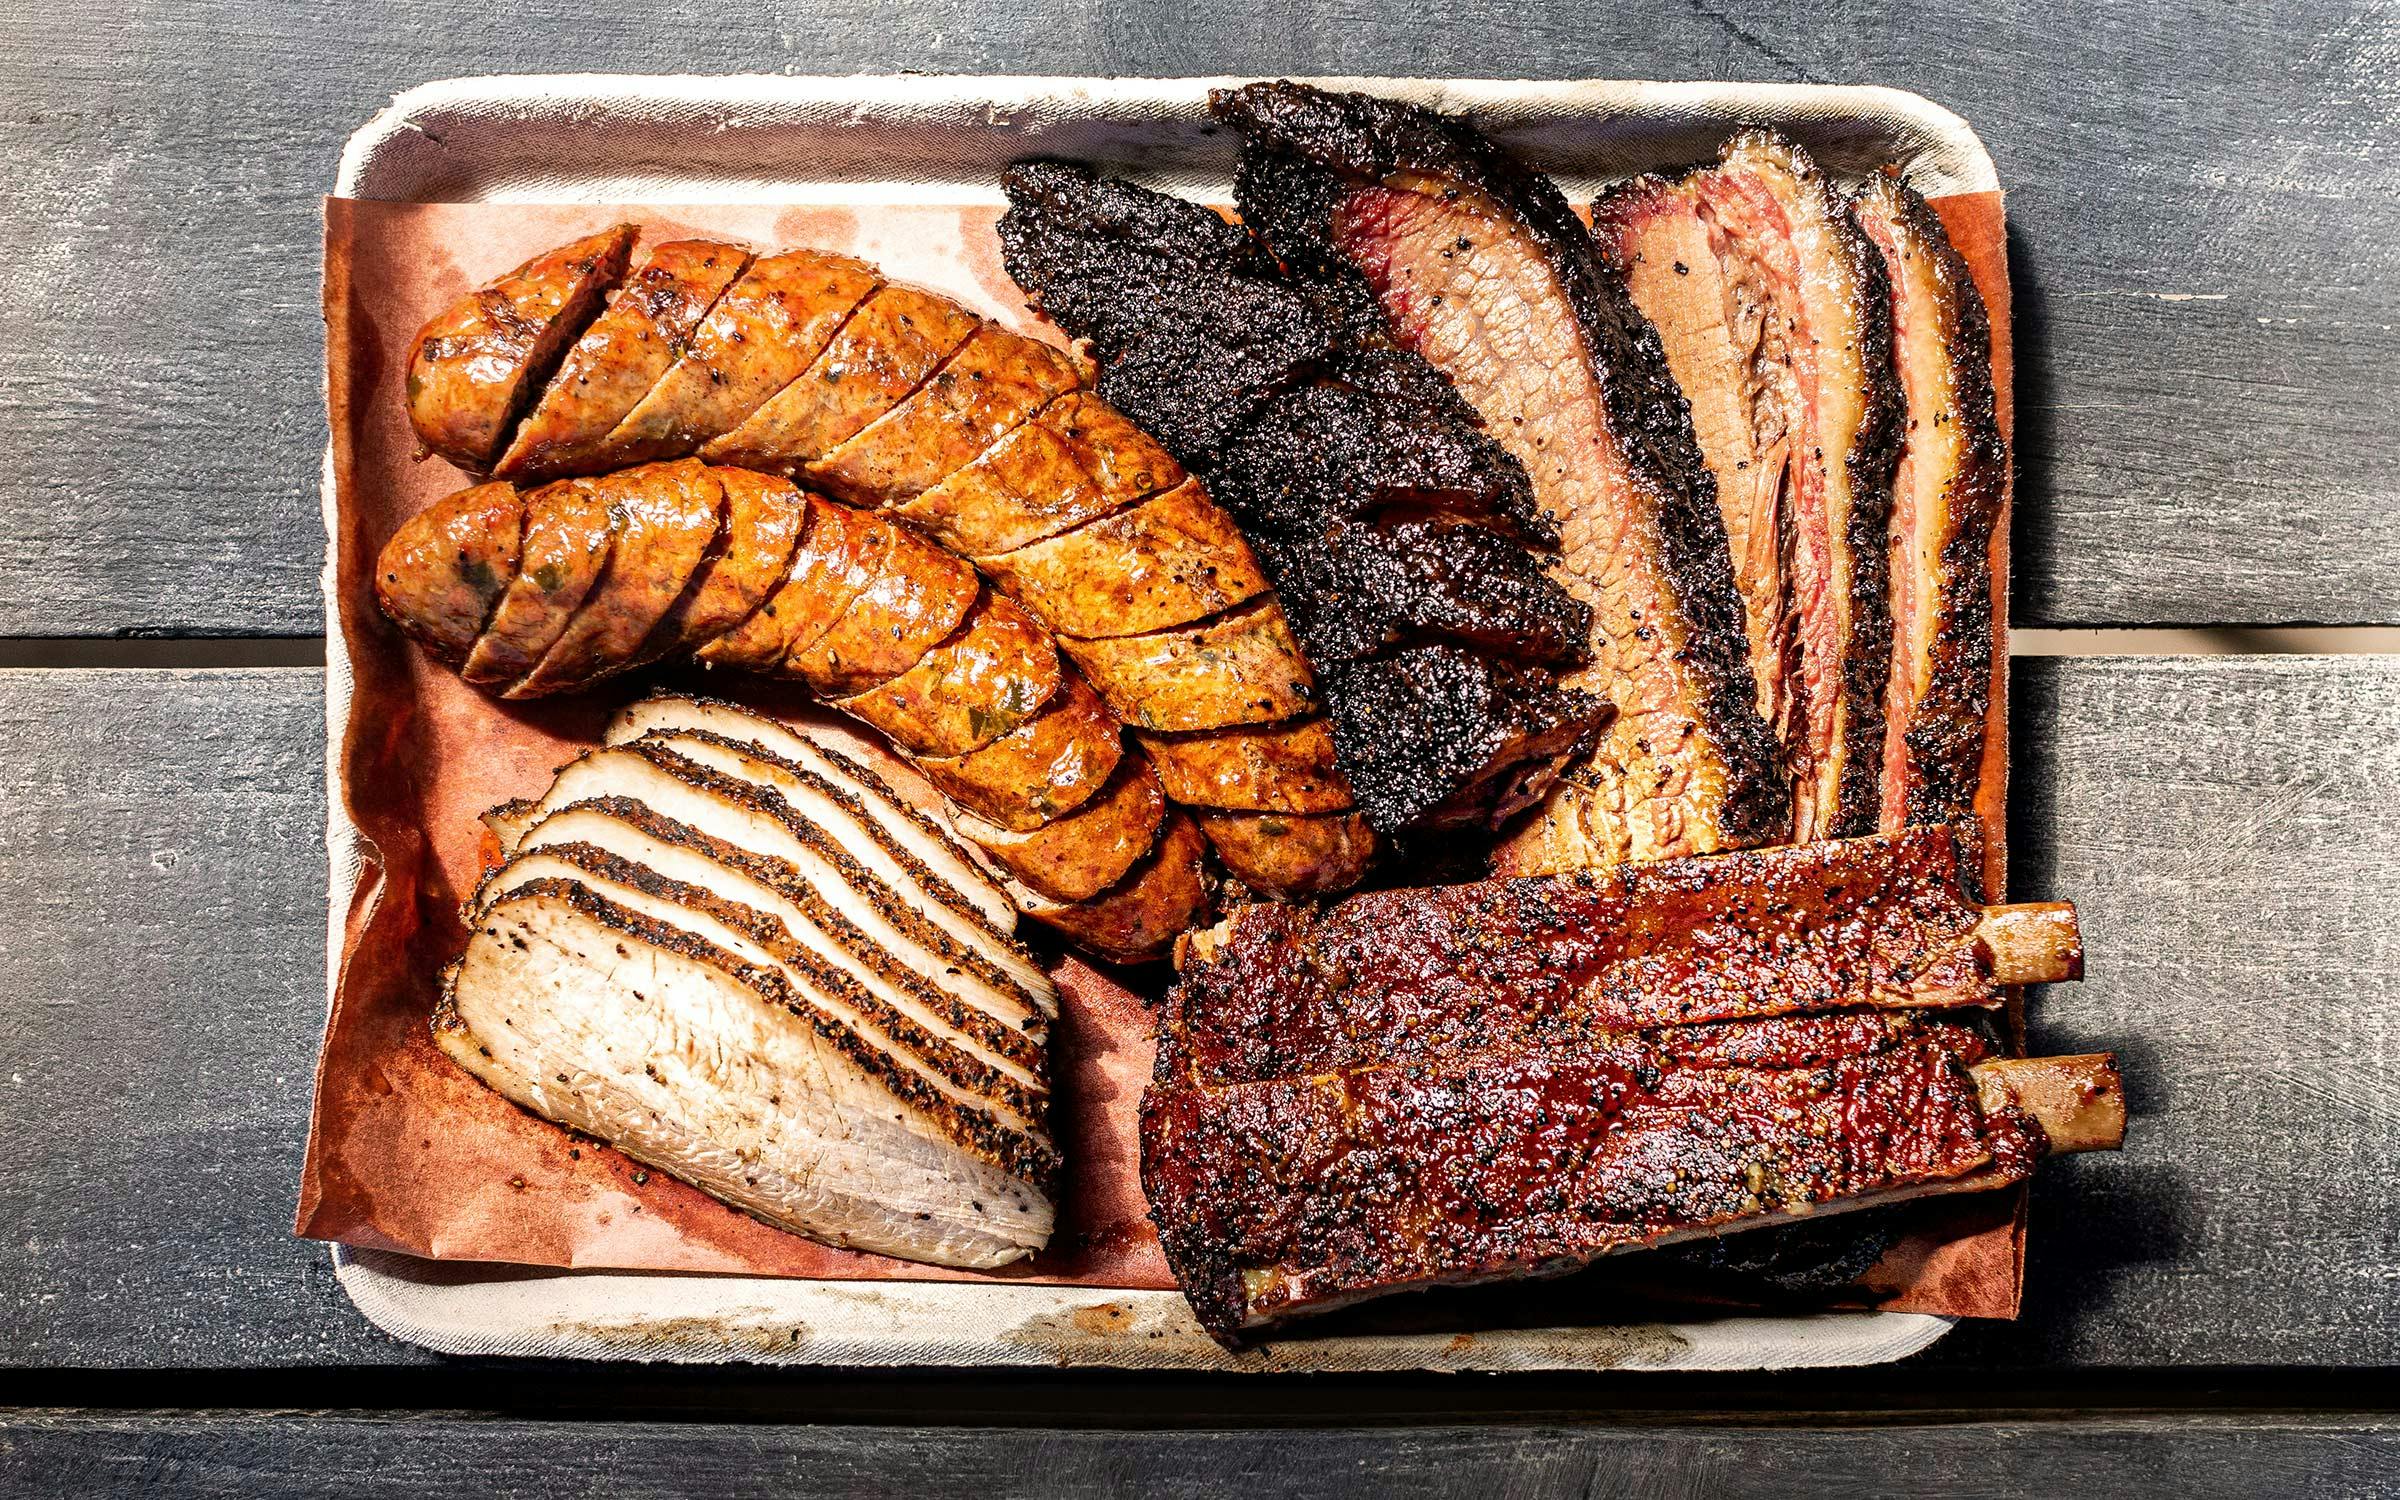 Ver weg Verhuizer Naar behoren The Top 50 Texas BBQ Joints: 2021 Edition – Texas Monthly